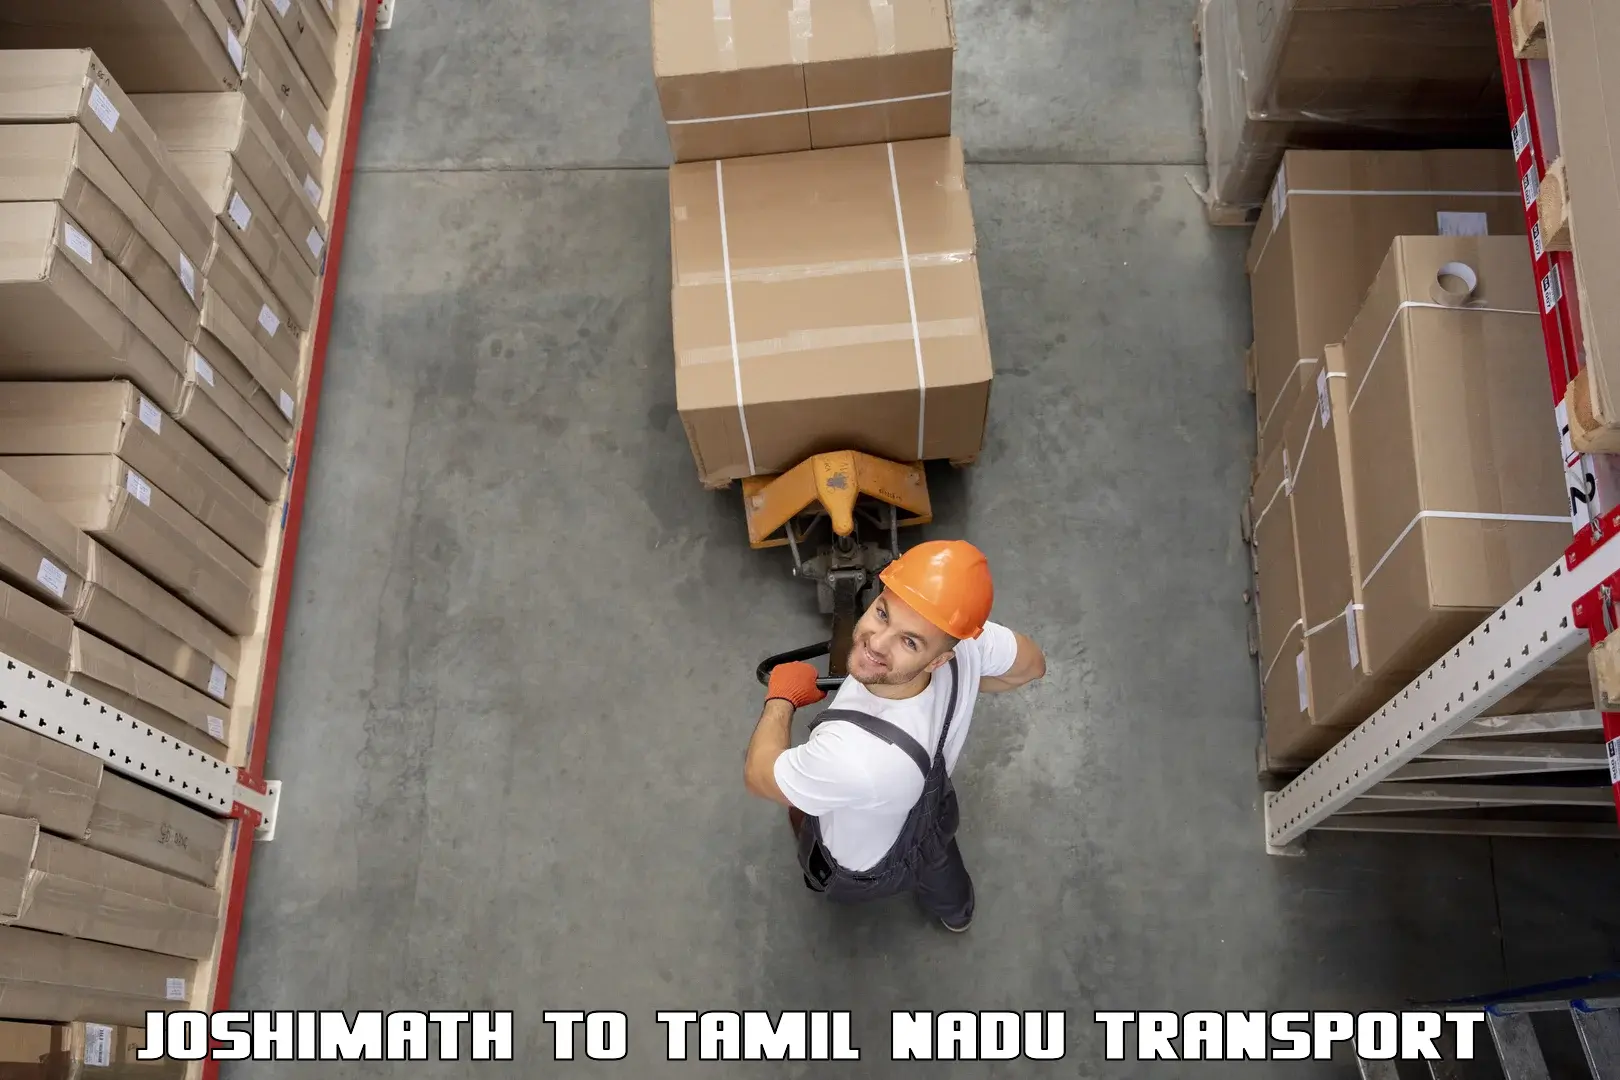 Transport shared services Joshimath to IIIT Tiruchirappalli